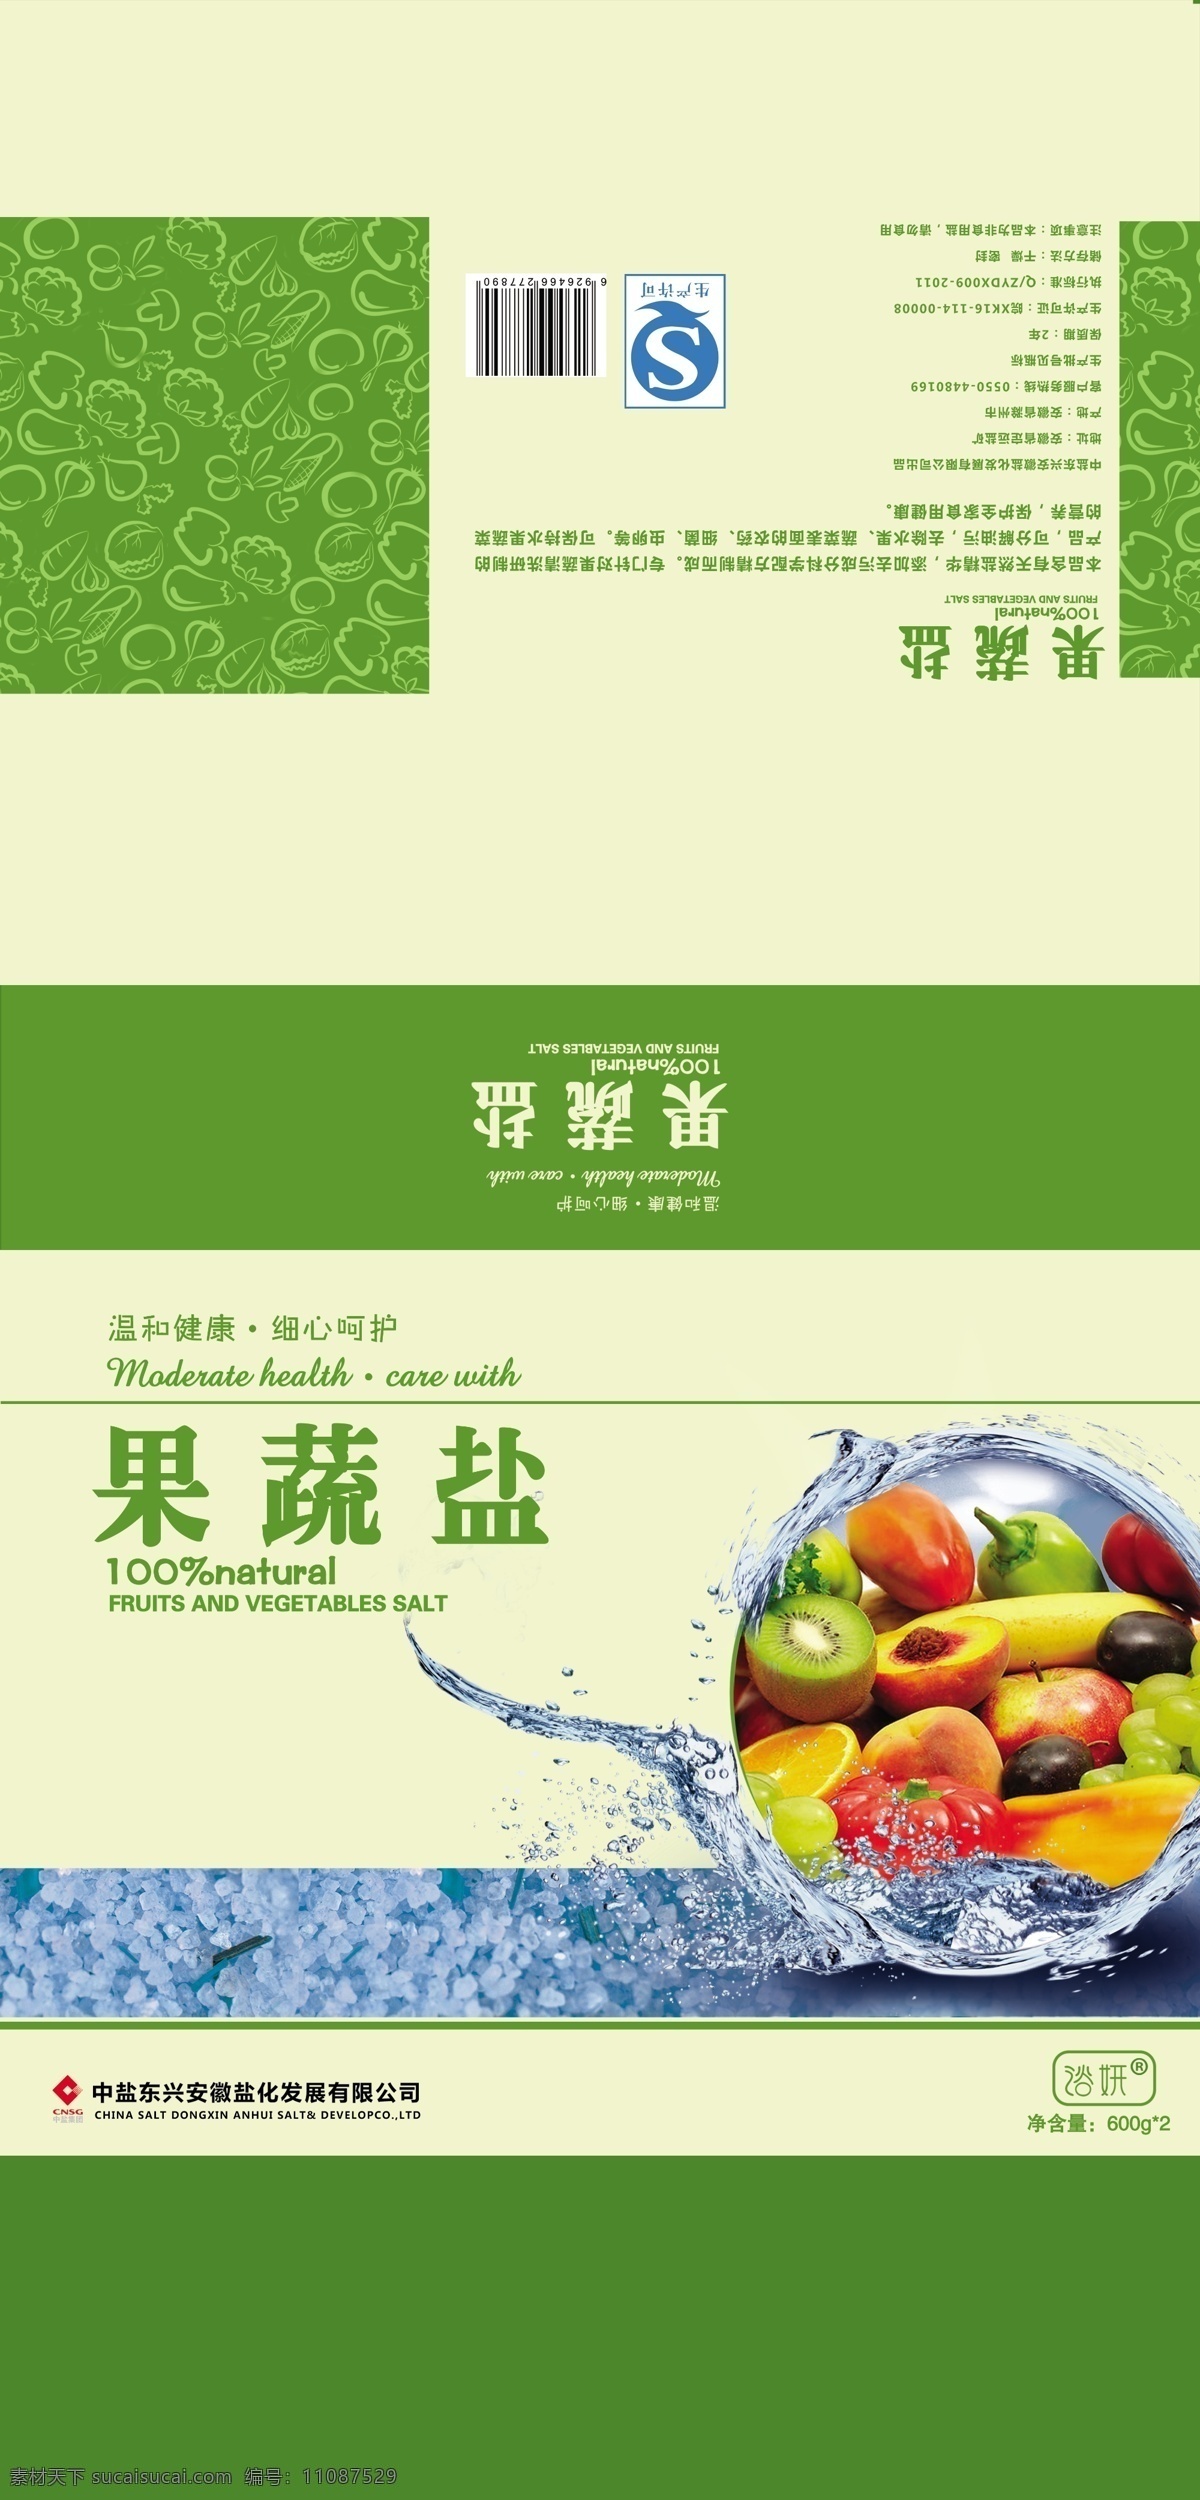 果蔬盐 浴盐 绿色 水果 礼盒 包装 护肤 果蔬 包装设计 广告设计模板 源文件